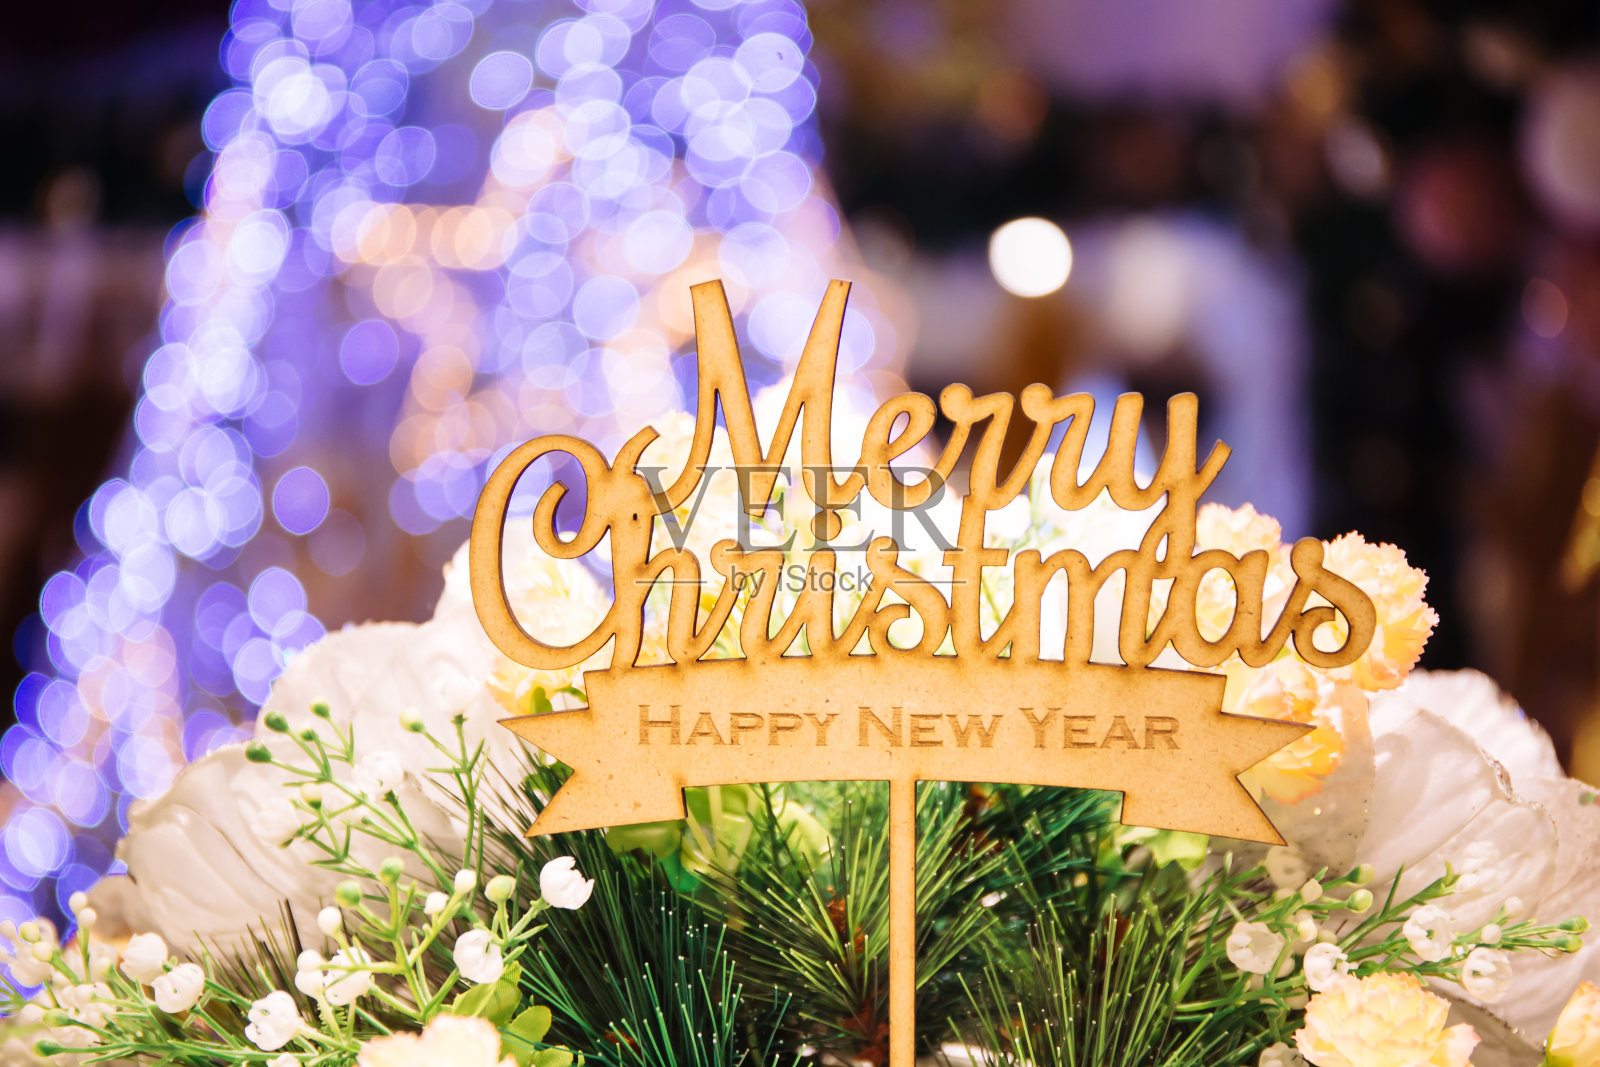 圣诞快乐和新年快乐的文字标志顶部棍与圣诞树在背景散焦照片摄影图片